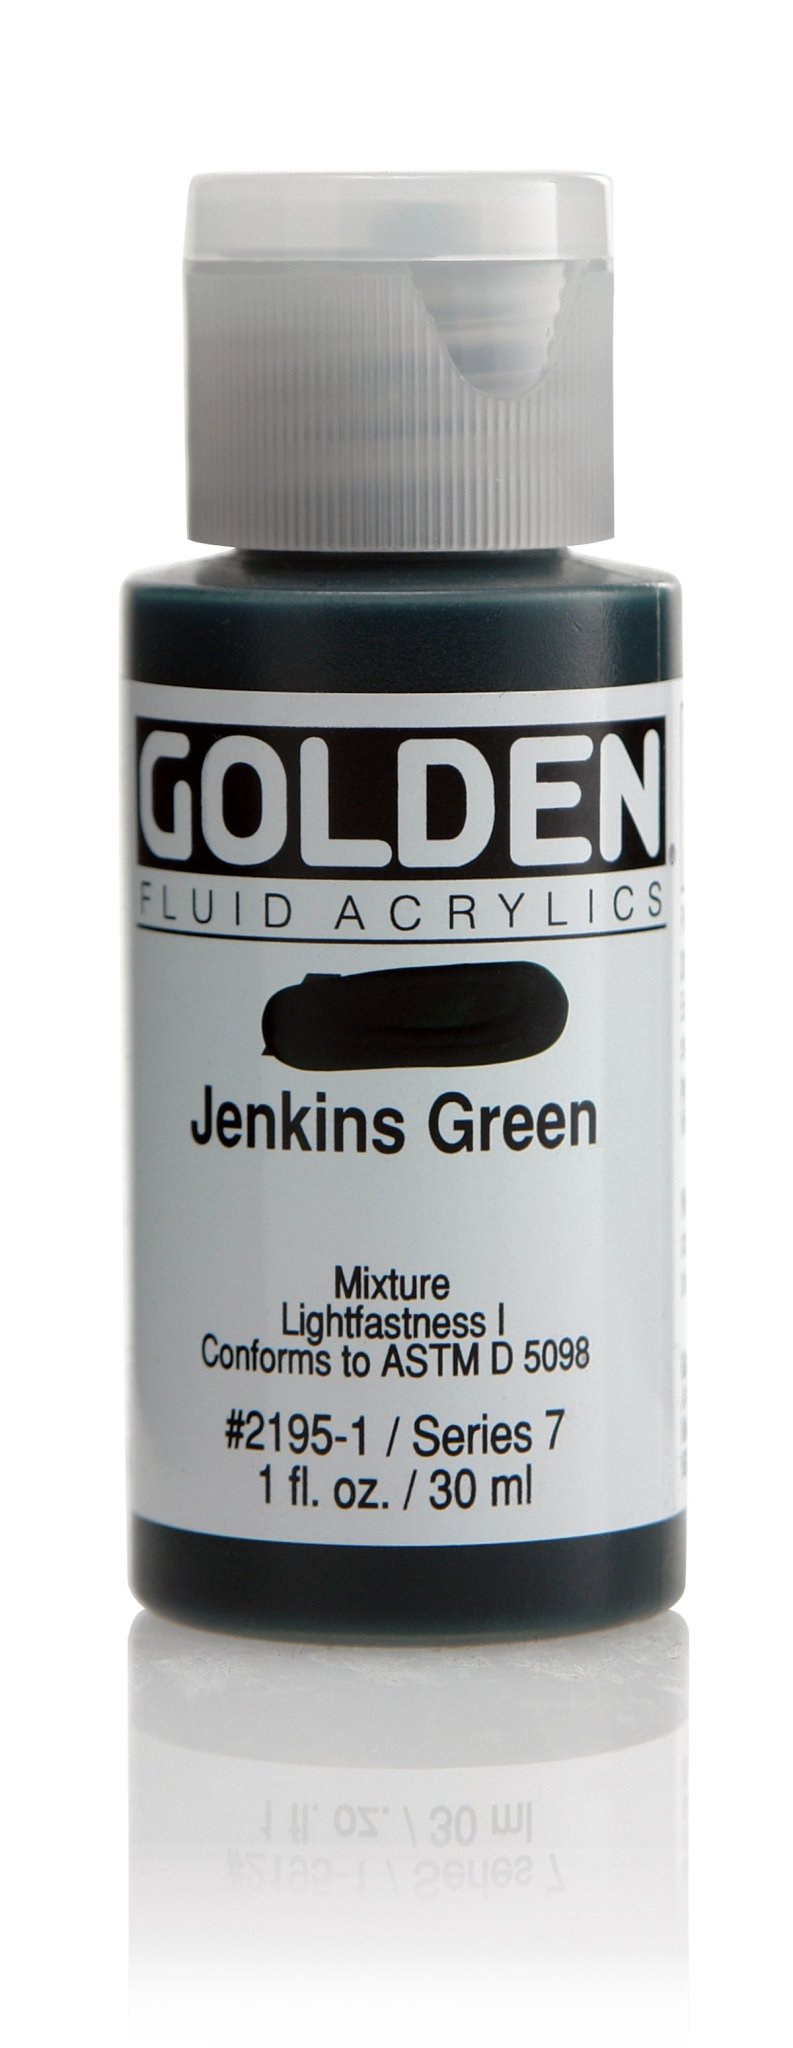 Golden Fluid Acrylics - Jenkins Green - 30ml - Create A Little Magic (Pty) Ltd